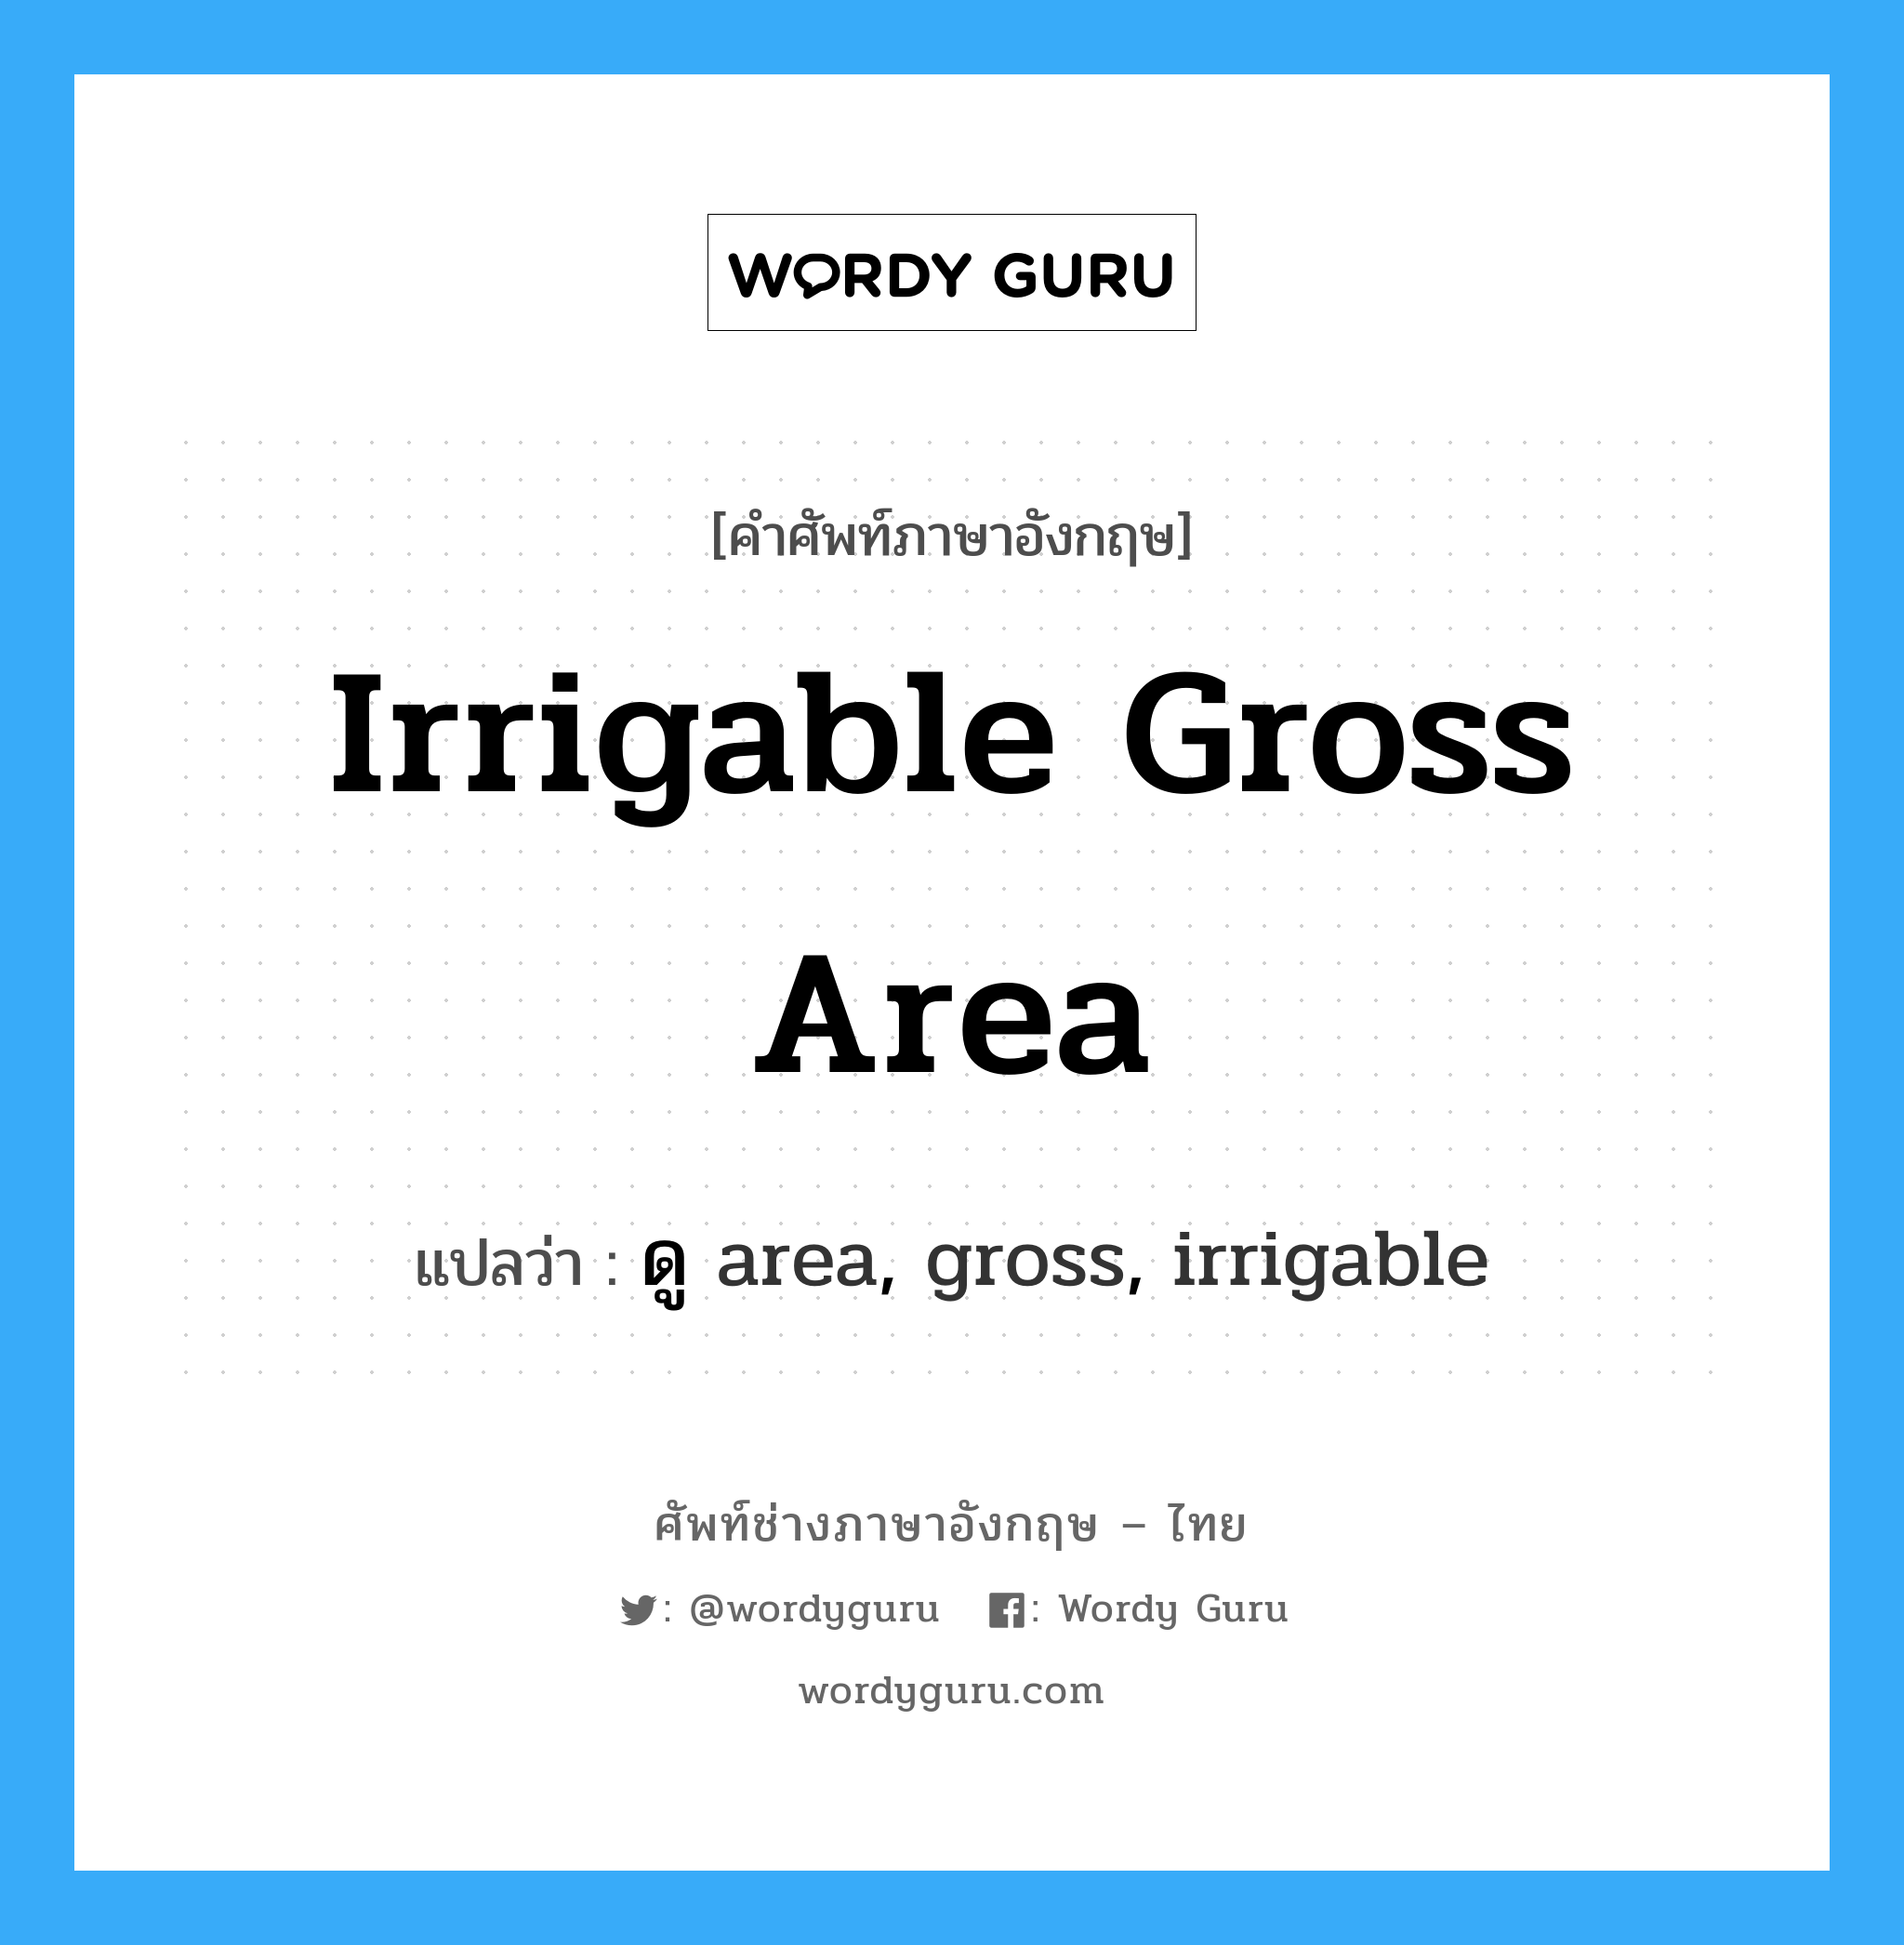 ดู area, gross, irrigable ภาษาอังกฤษ?, คำศัพท์ช่างภาษาอังกฤษ - ไทย ดู area, gross, irrigable คำศัพท์ภาษาอังกฤษ ดู area, gross, irrigable แปลว่า irrigable gross area